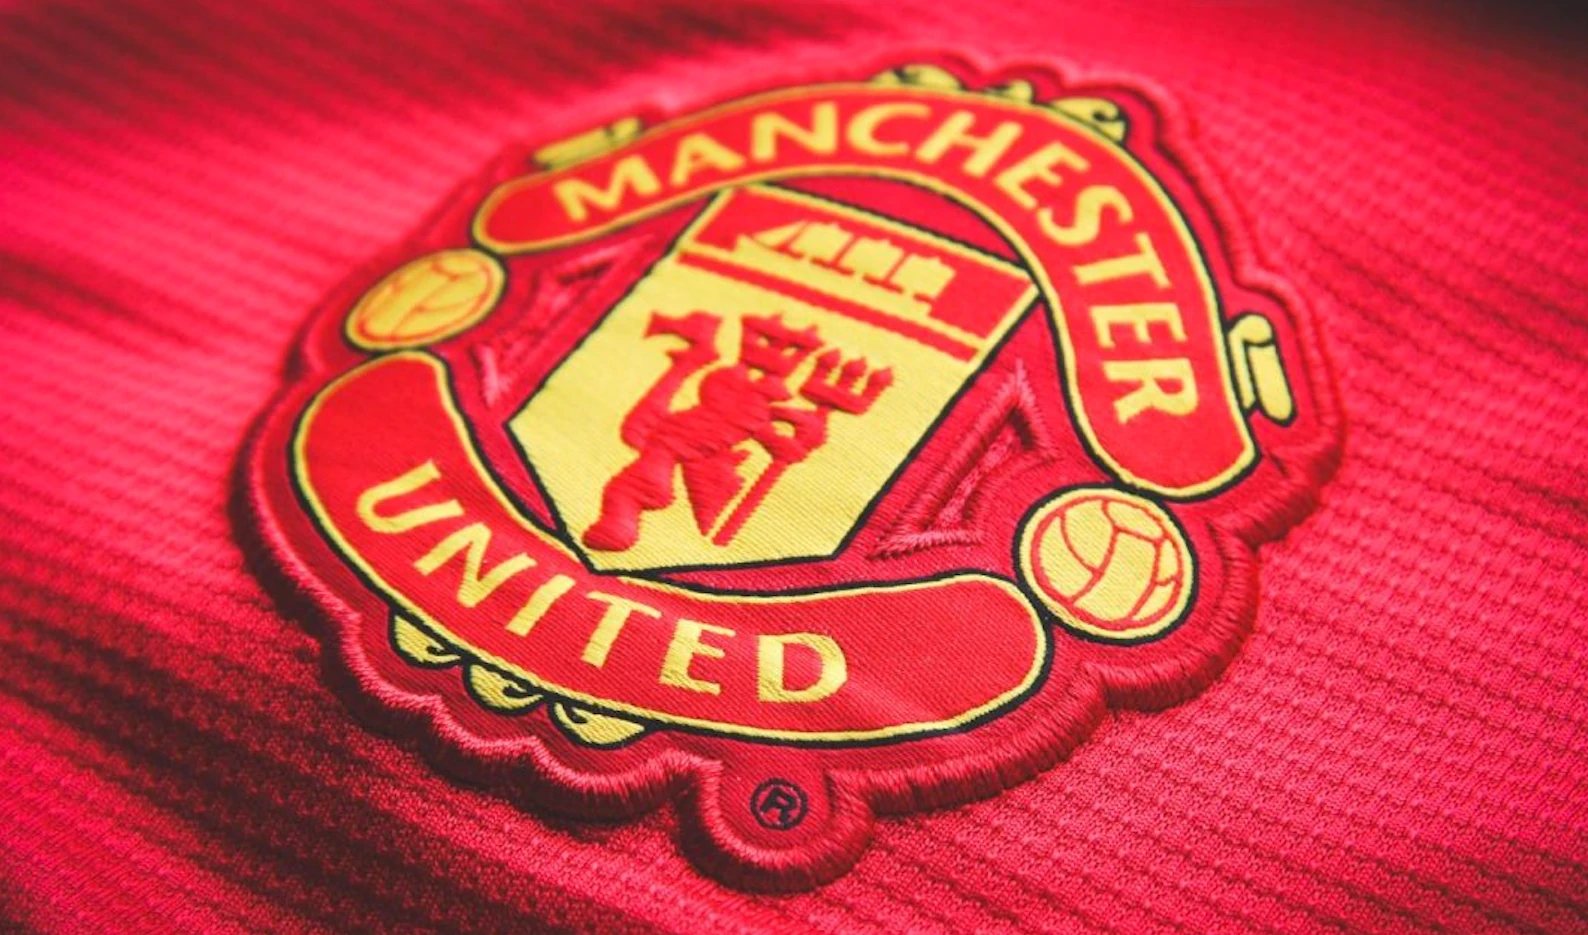 Manchester United renueva otros 10 años su contrato con Adidas, por más de 1,000 mde